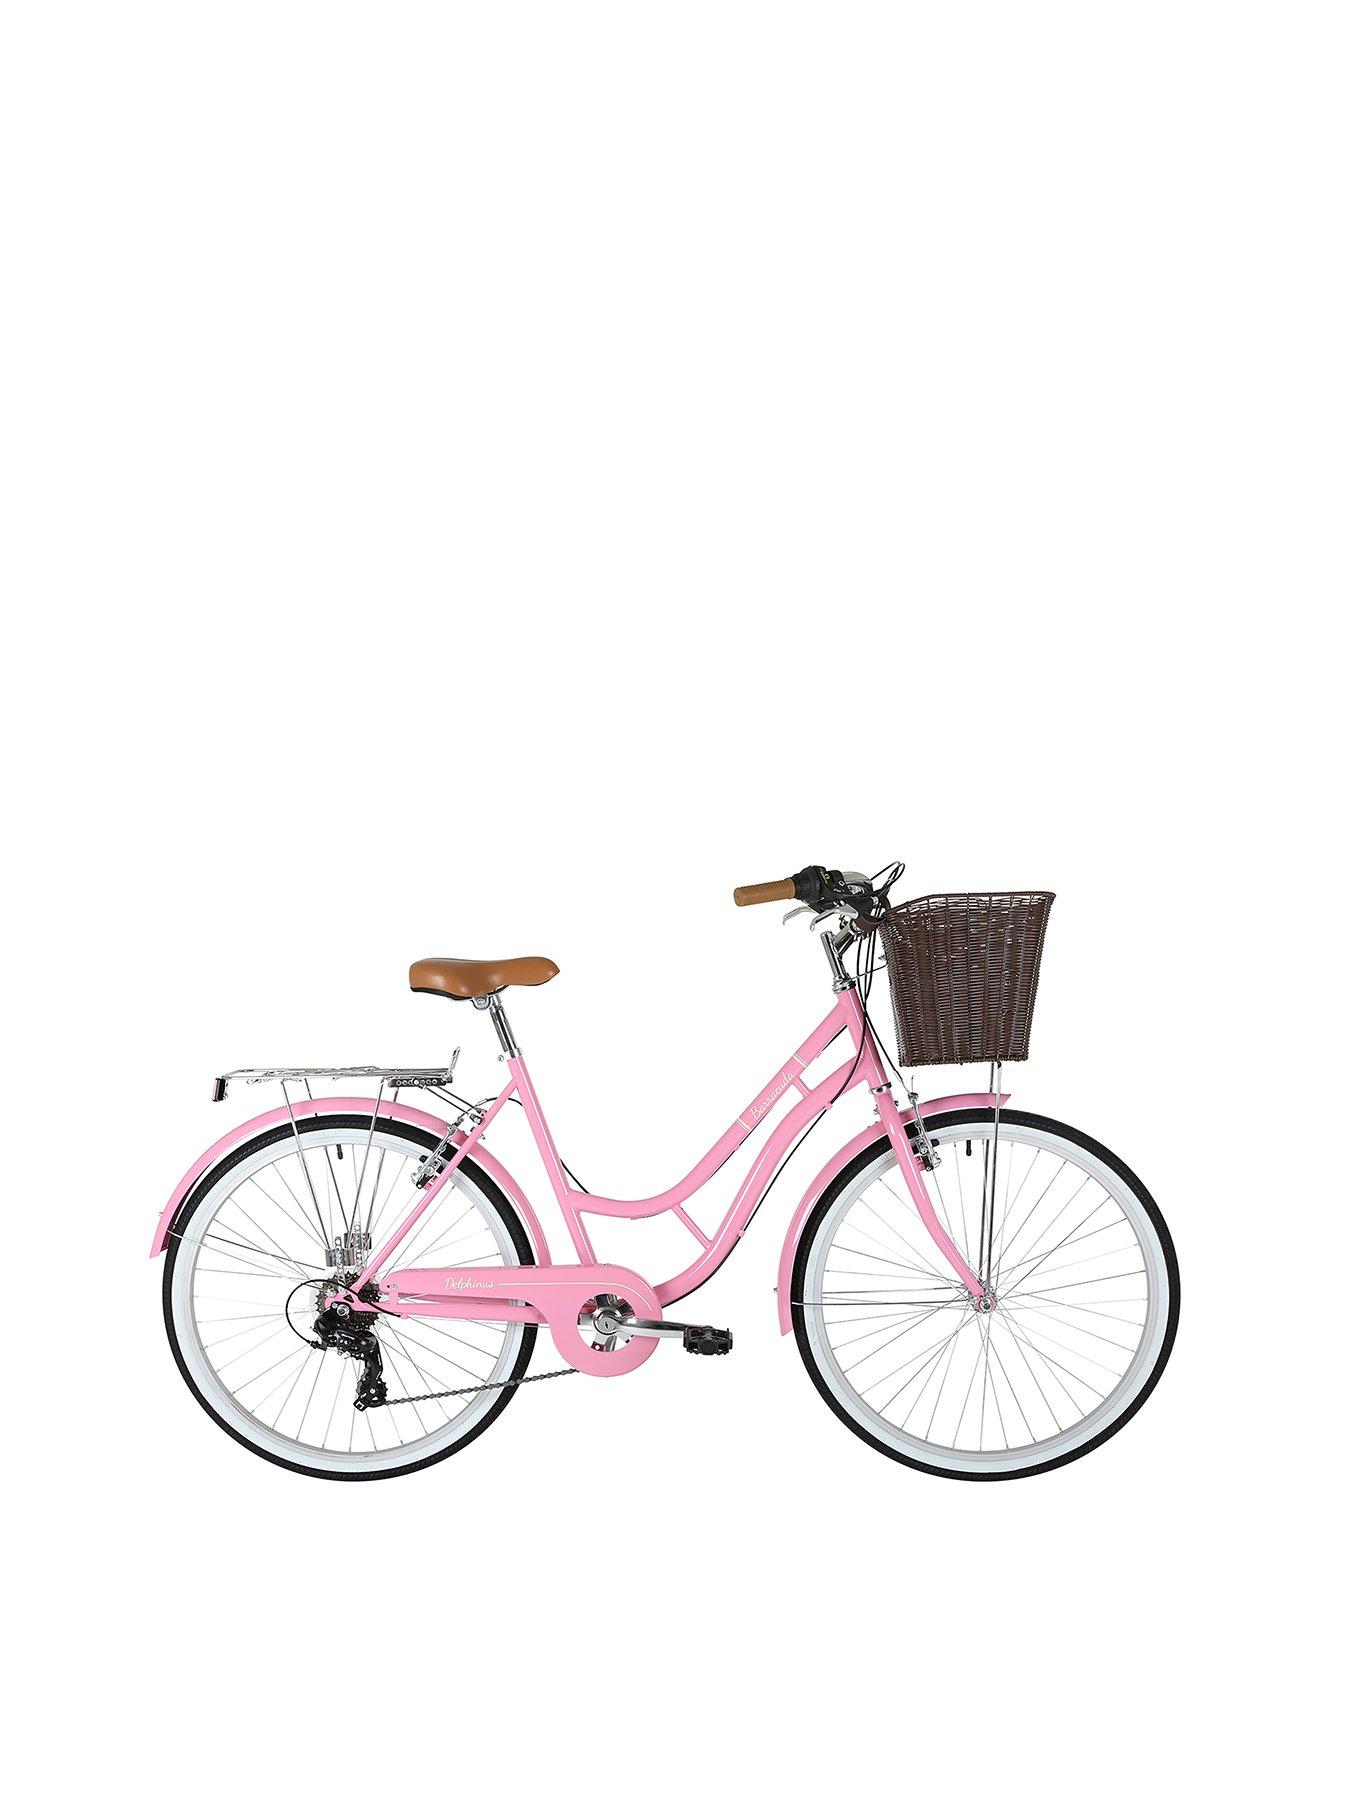 ladies pink bike with basket